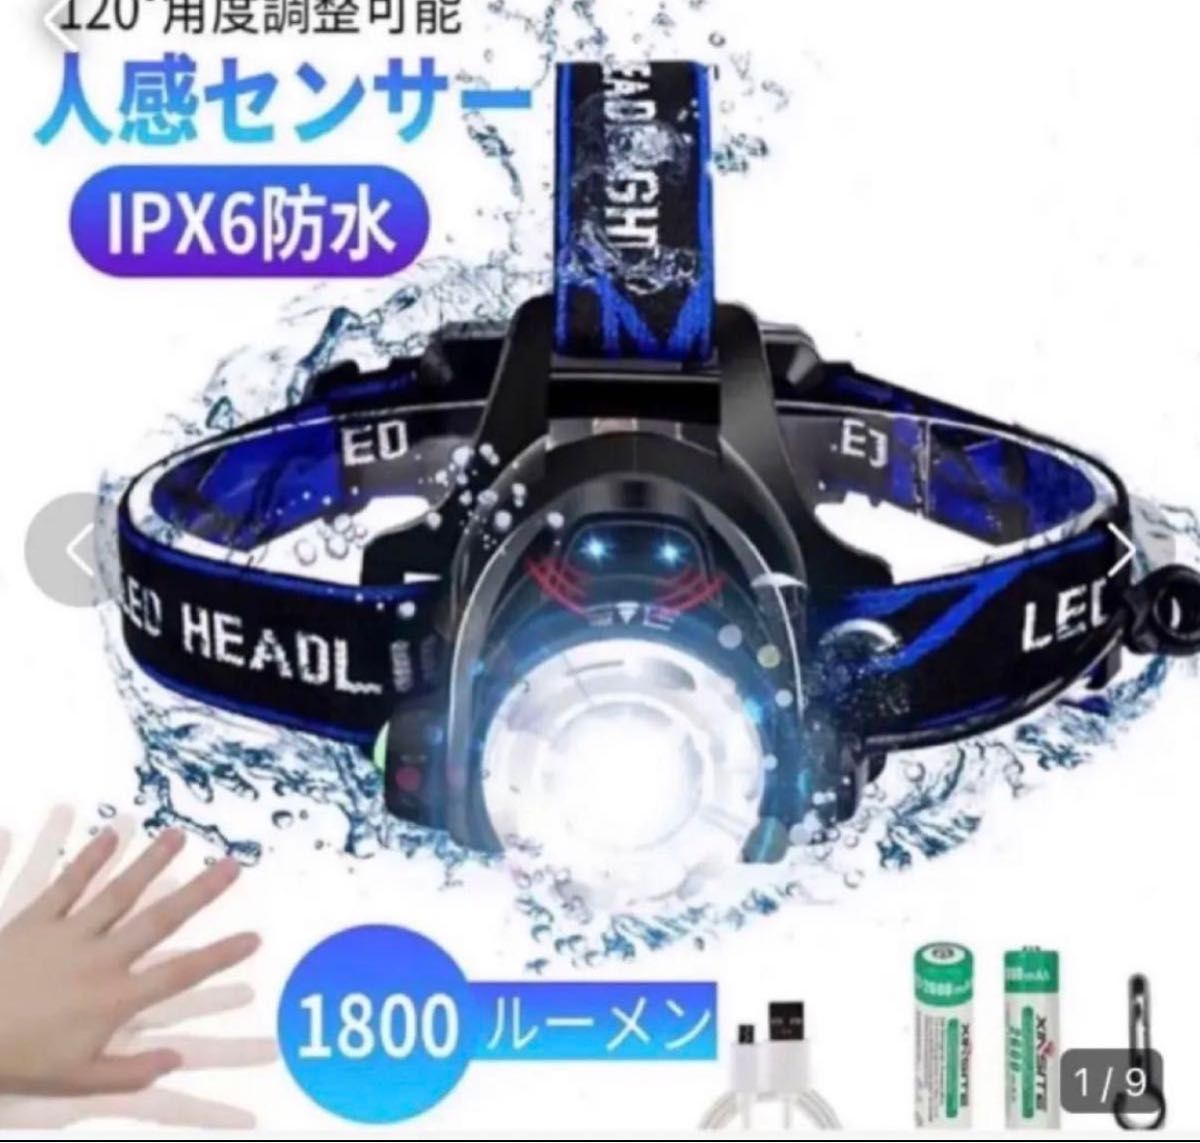 LEDヘッドライト 充電式 高輝度 ヘッドランプ 人感センサー 防水防災 